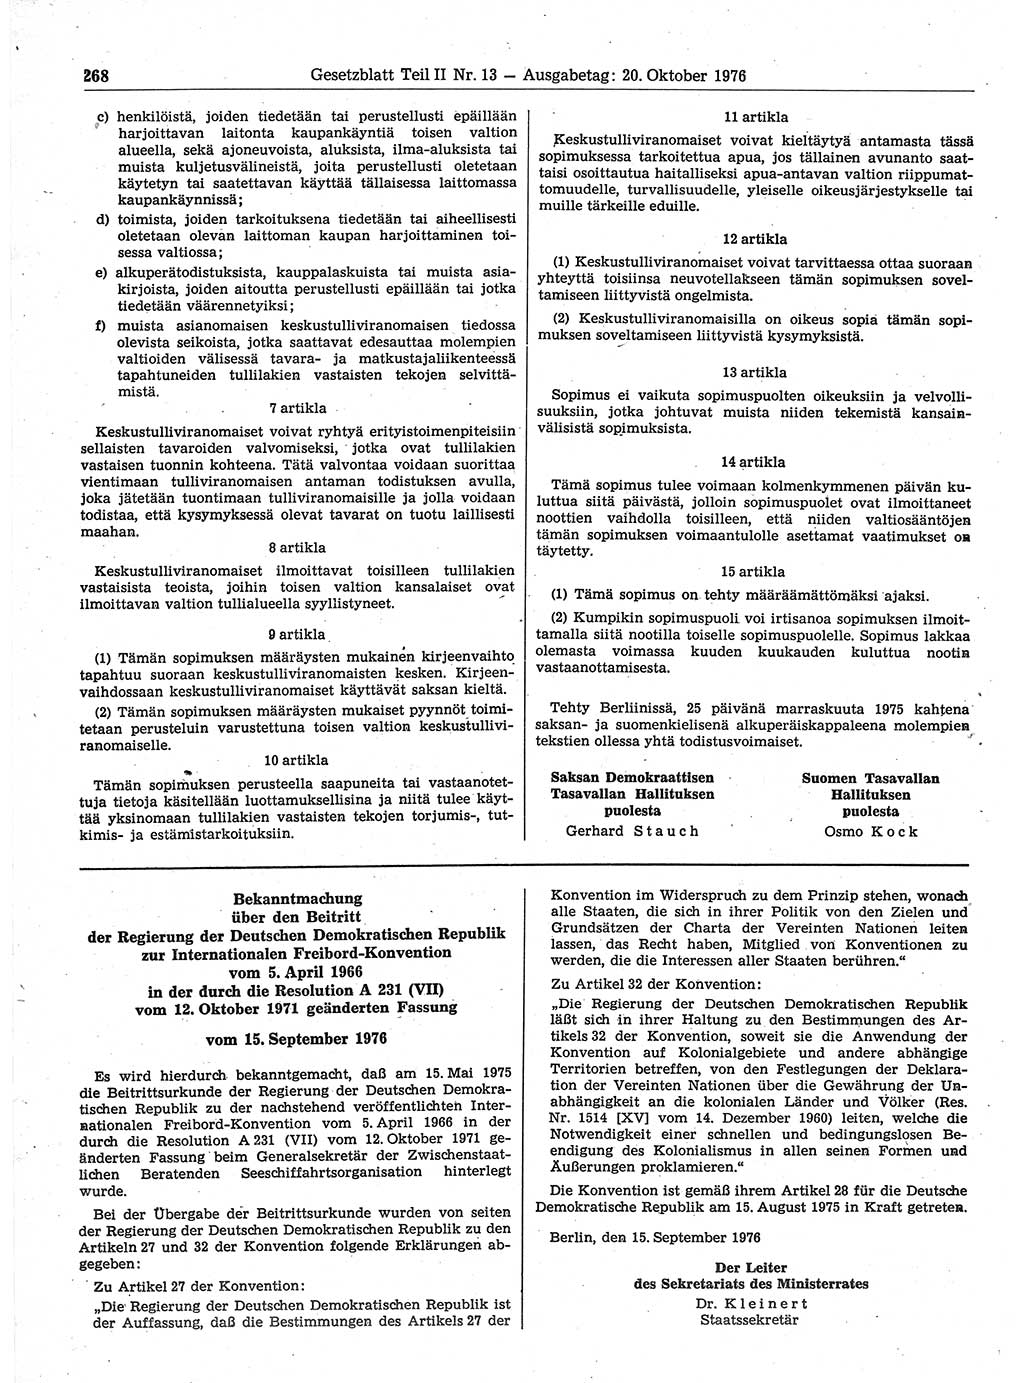 Gesetzblatt (GBl.) der Deutschen Demokratischen Republik (DDR) Teil ⅠⅠ 1976, Seite 268 (GBl. DDR ⅠⅠ 1976, S. 268)